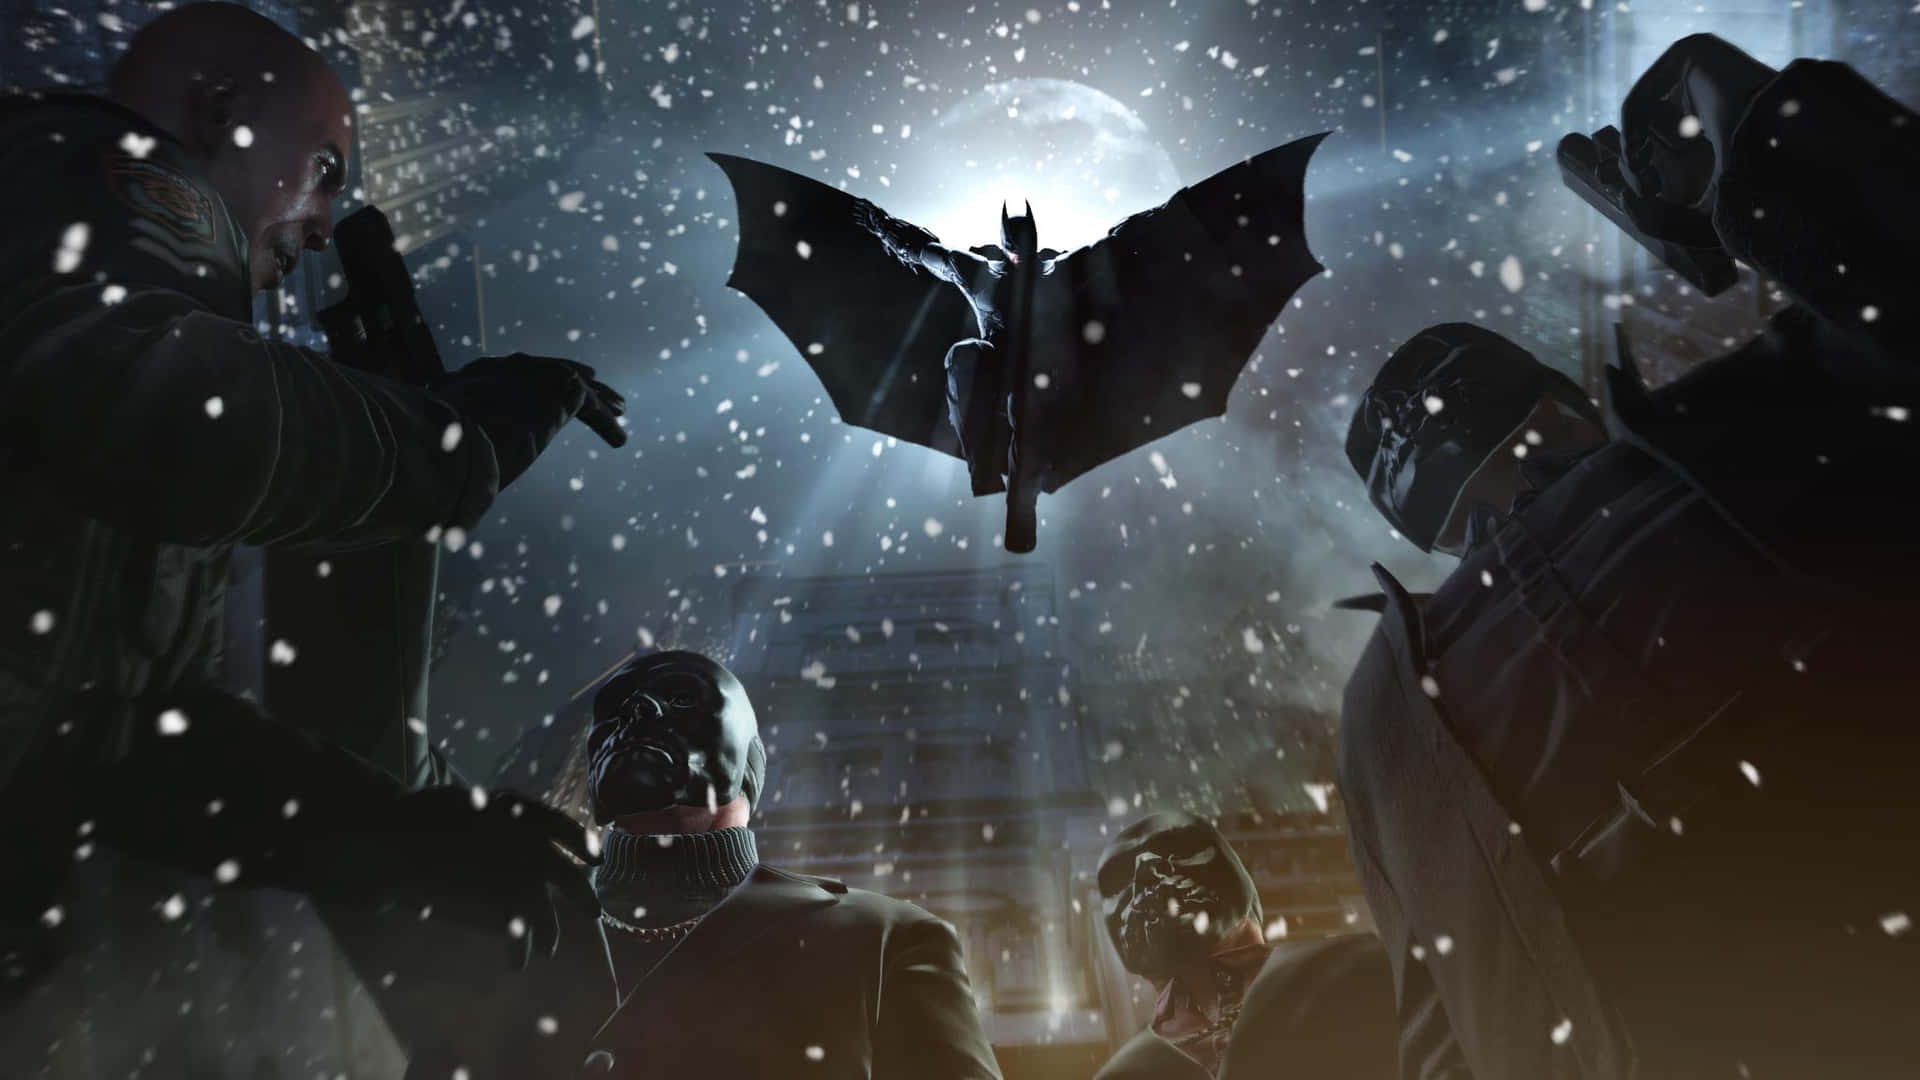 Derdunkle Ritter Kämpft Für Gerechtigkeit In Batman Arkham Origins. Wallpaper